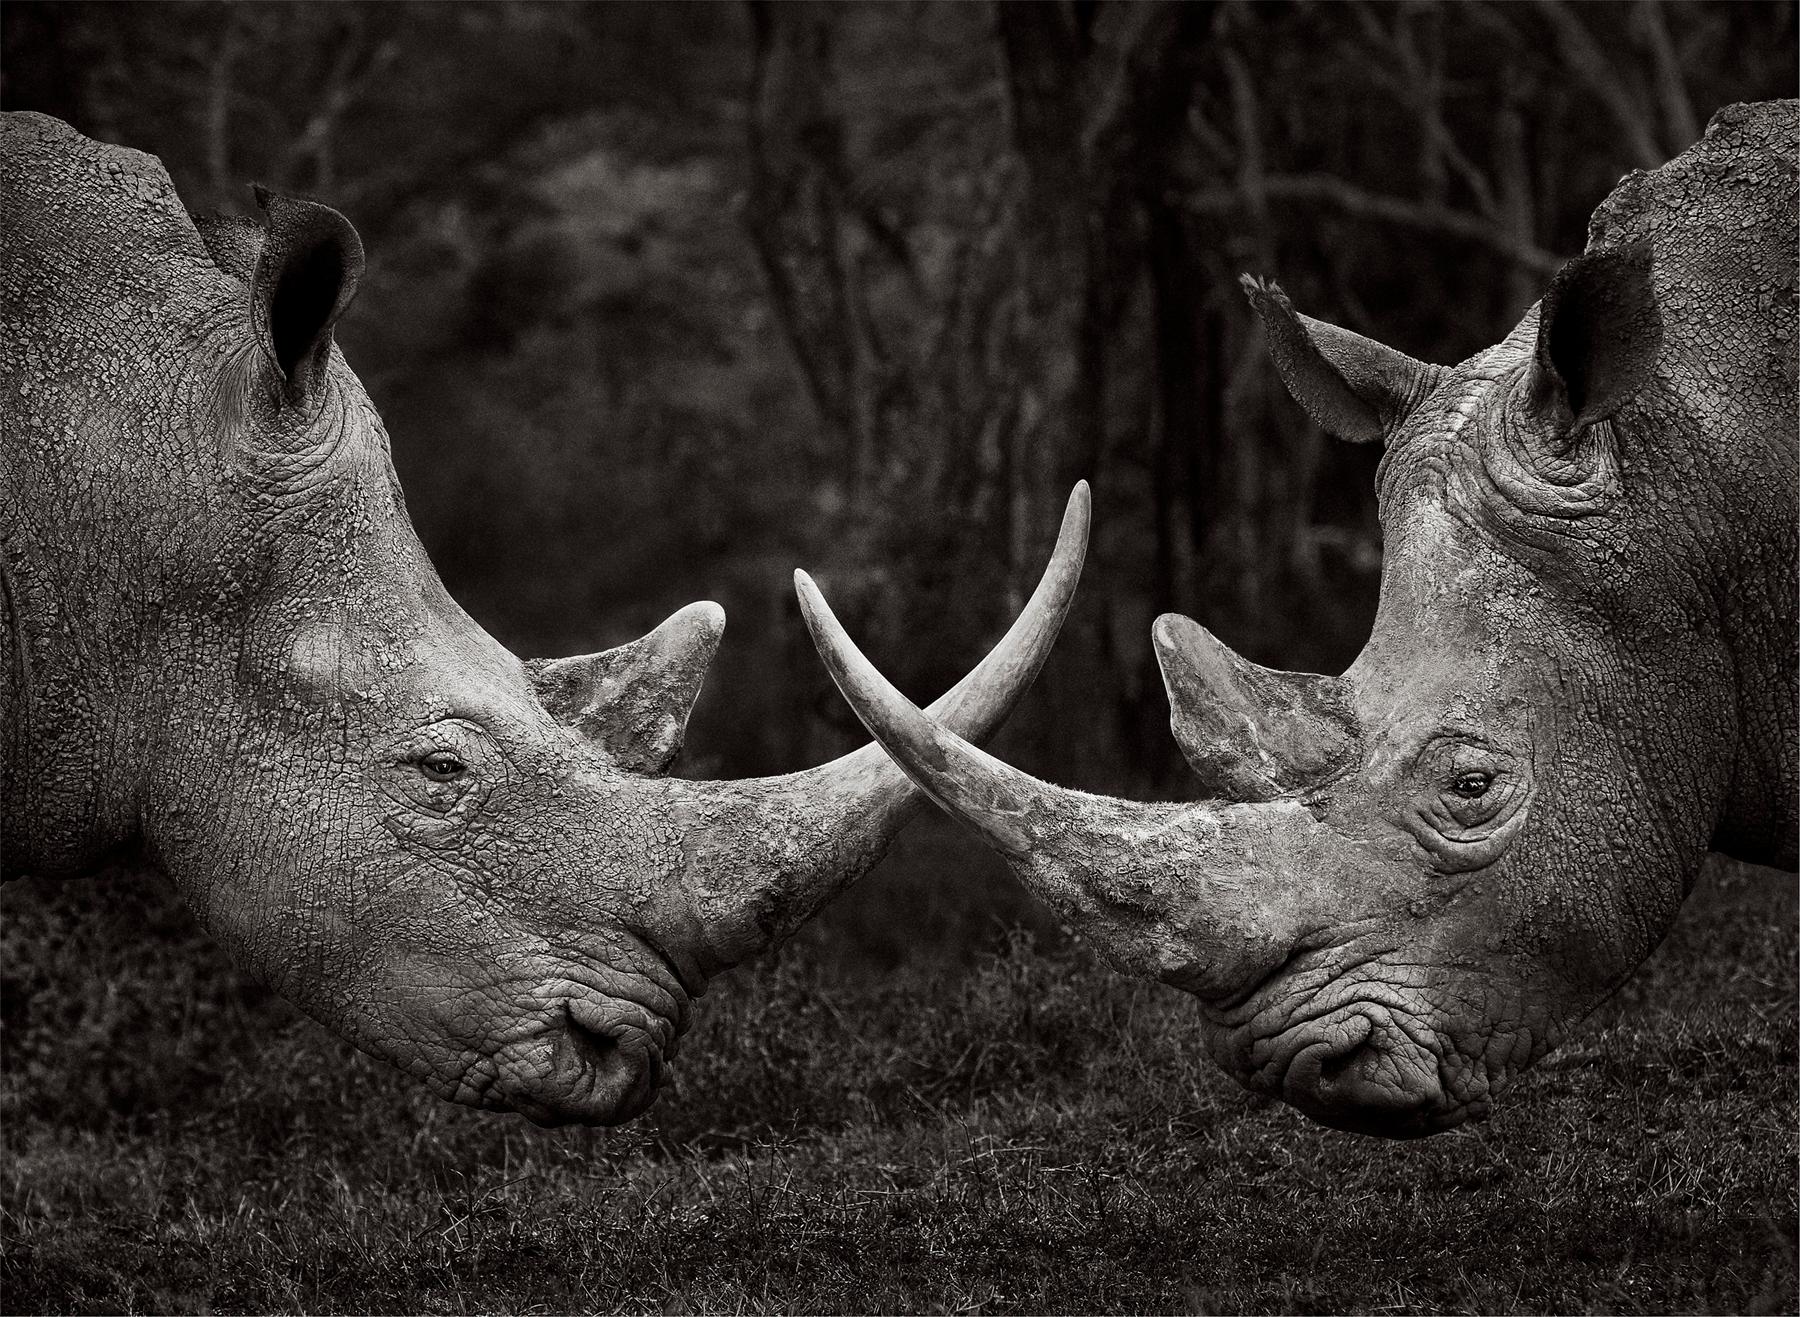 Black and White Photograph Drew Doggett - Incroyable portrait de deux rhinos croisés au centre, inspiré du design 